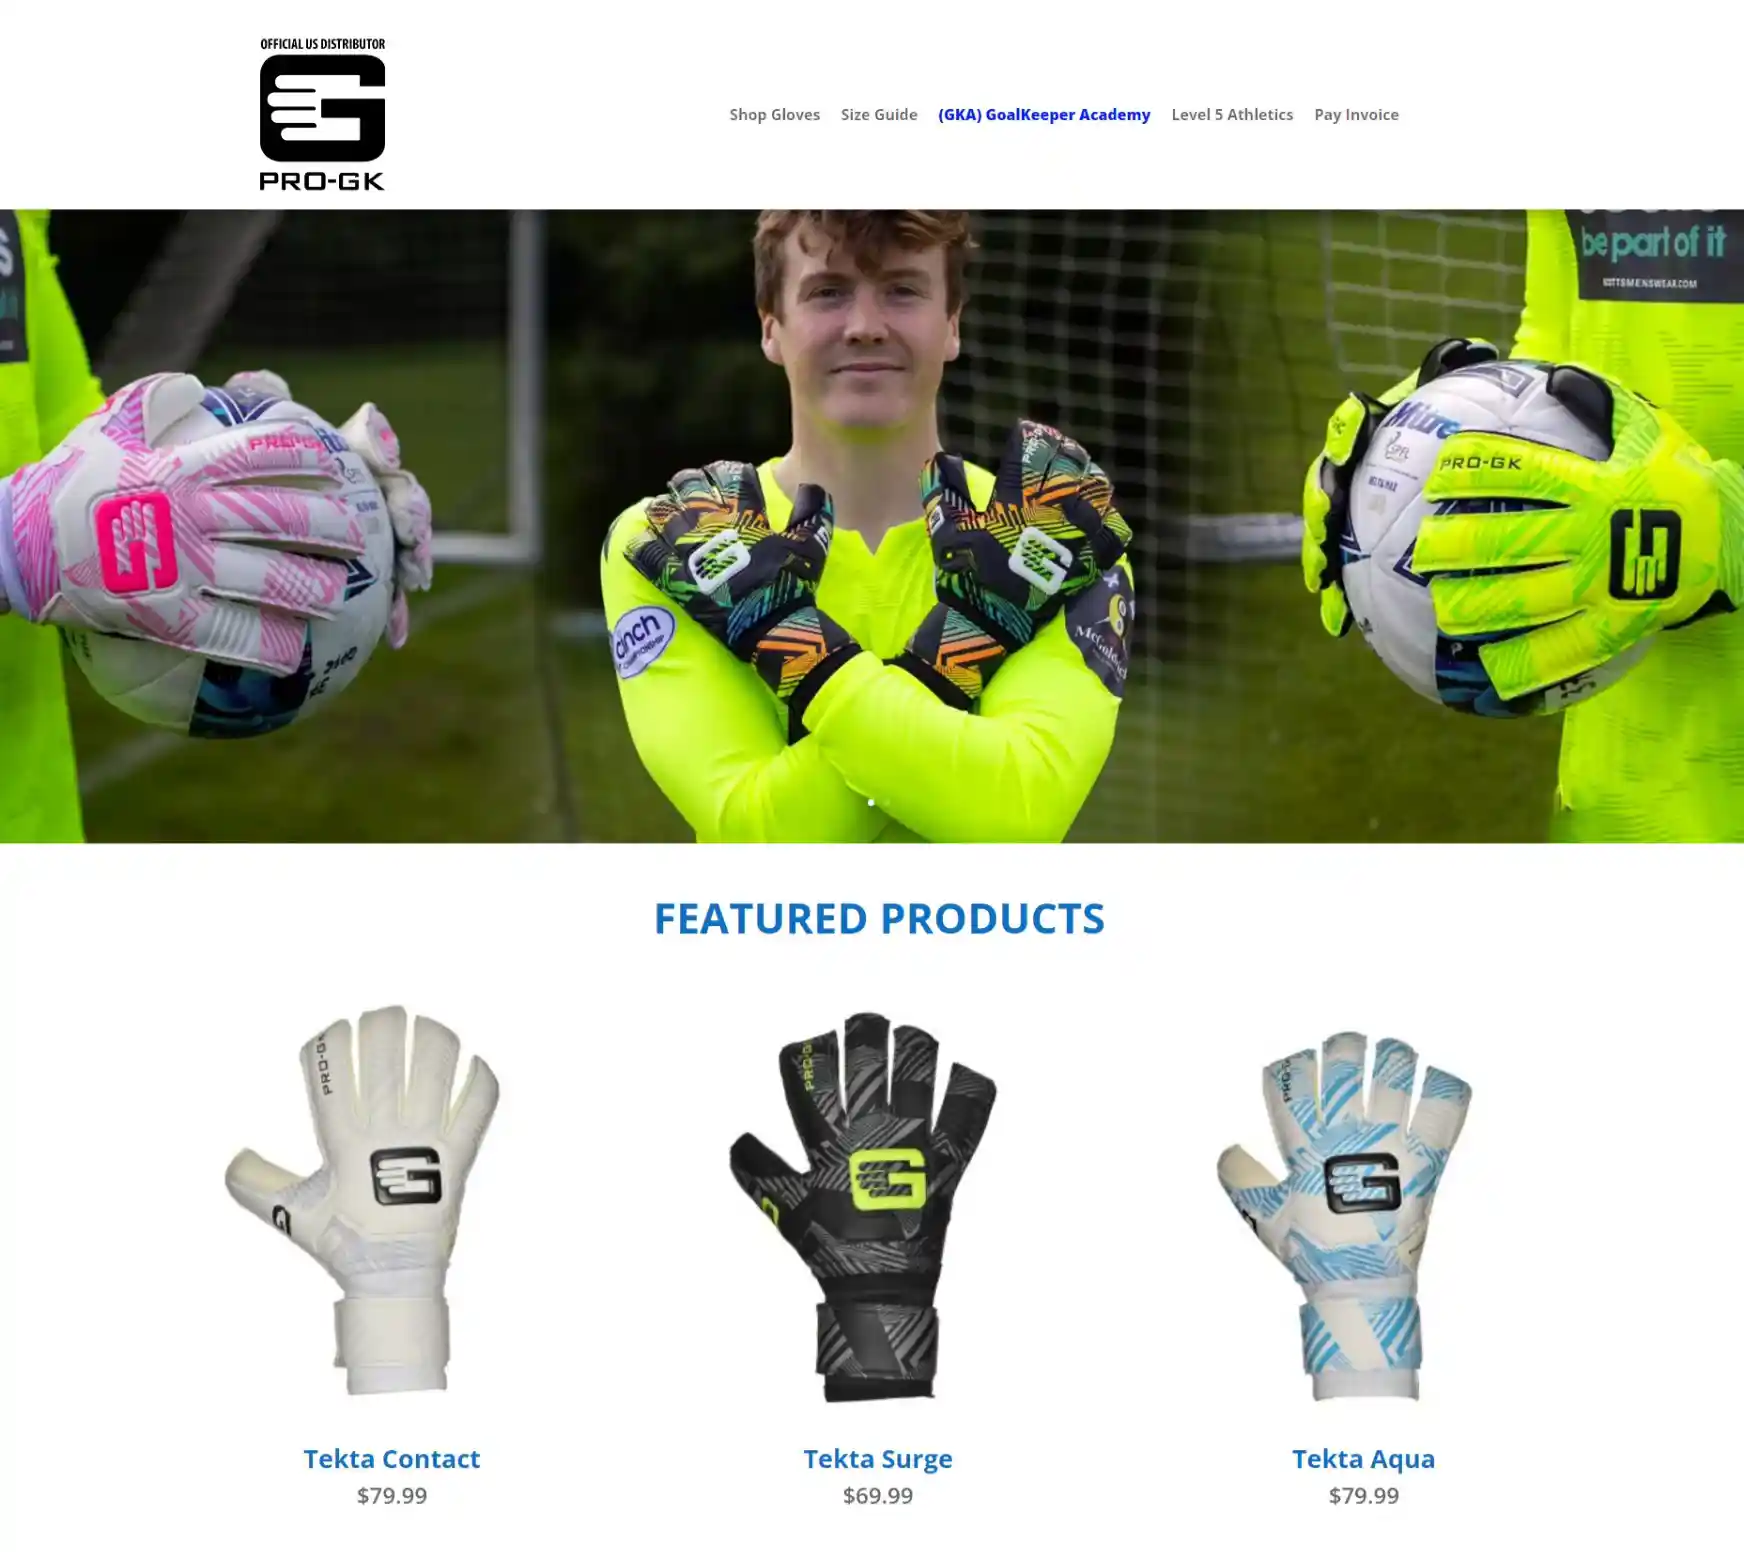 Pro-GK-USA athletic sportsware ecommerce